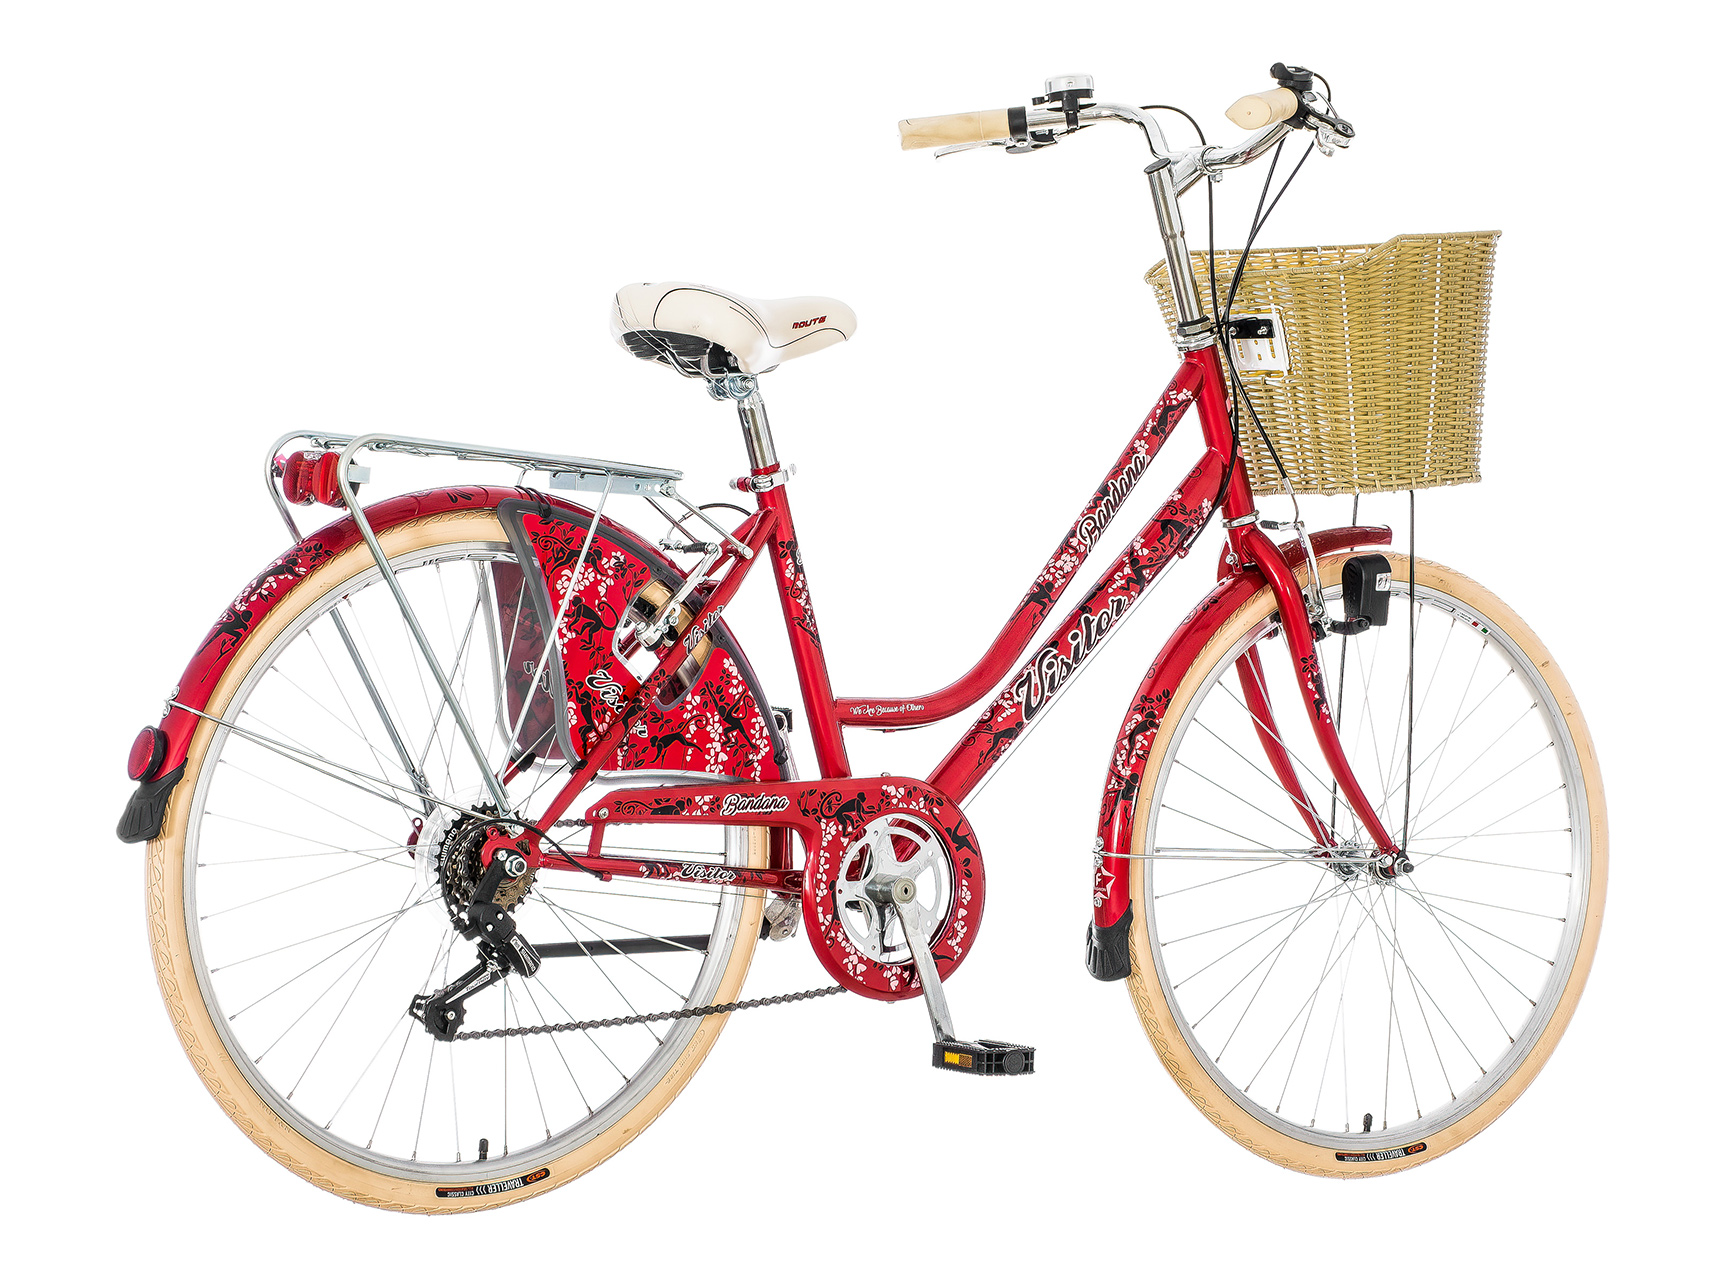 Crveno crna bandana ženska bicikla -fam269f